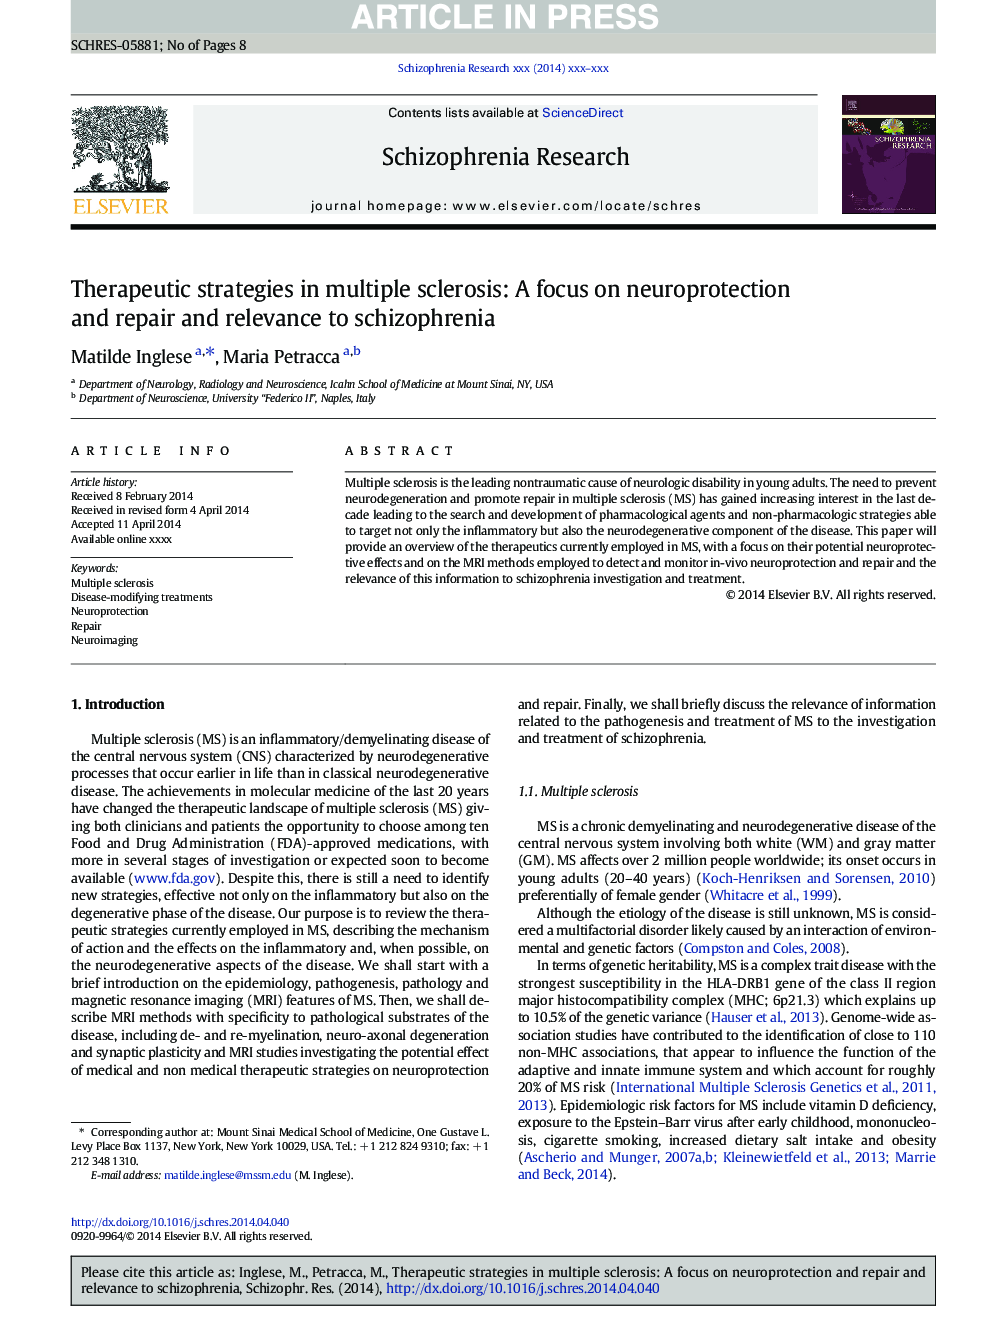 استراتژی های درمانی در بیماران مبتلا به مولتیپل اسکلروزیس: تمرکز بر عصبانیت و ترمیم و ارتباط با اسکیزوفرنیا 